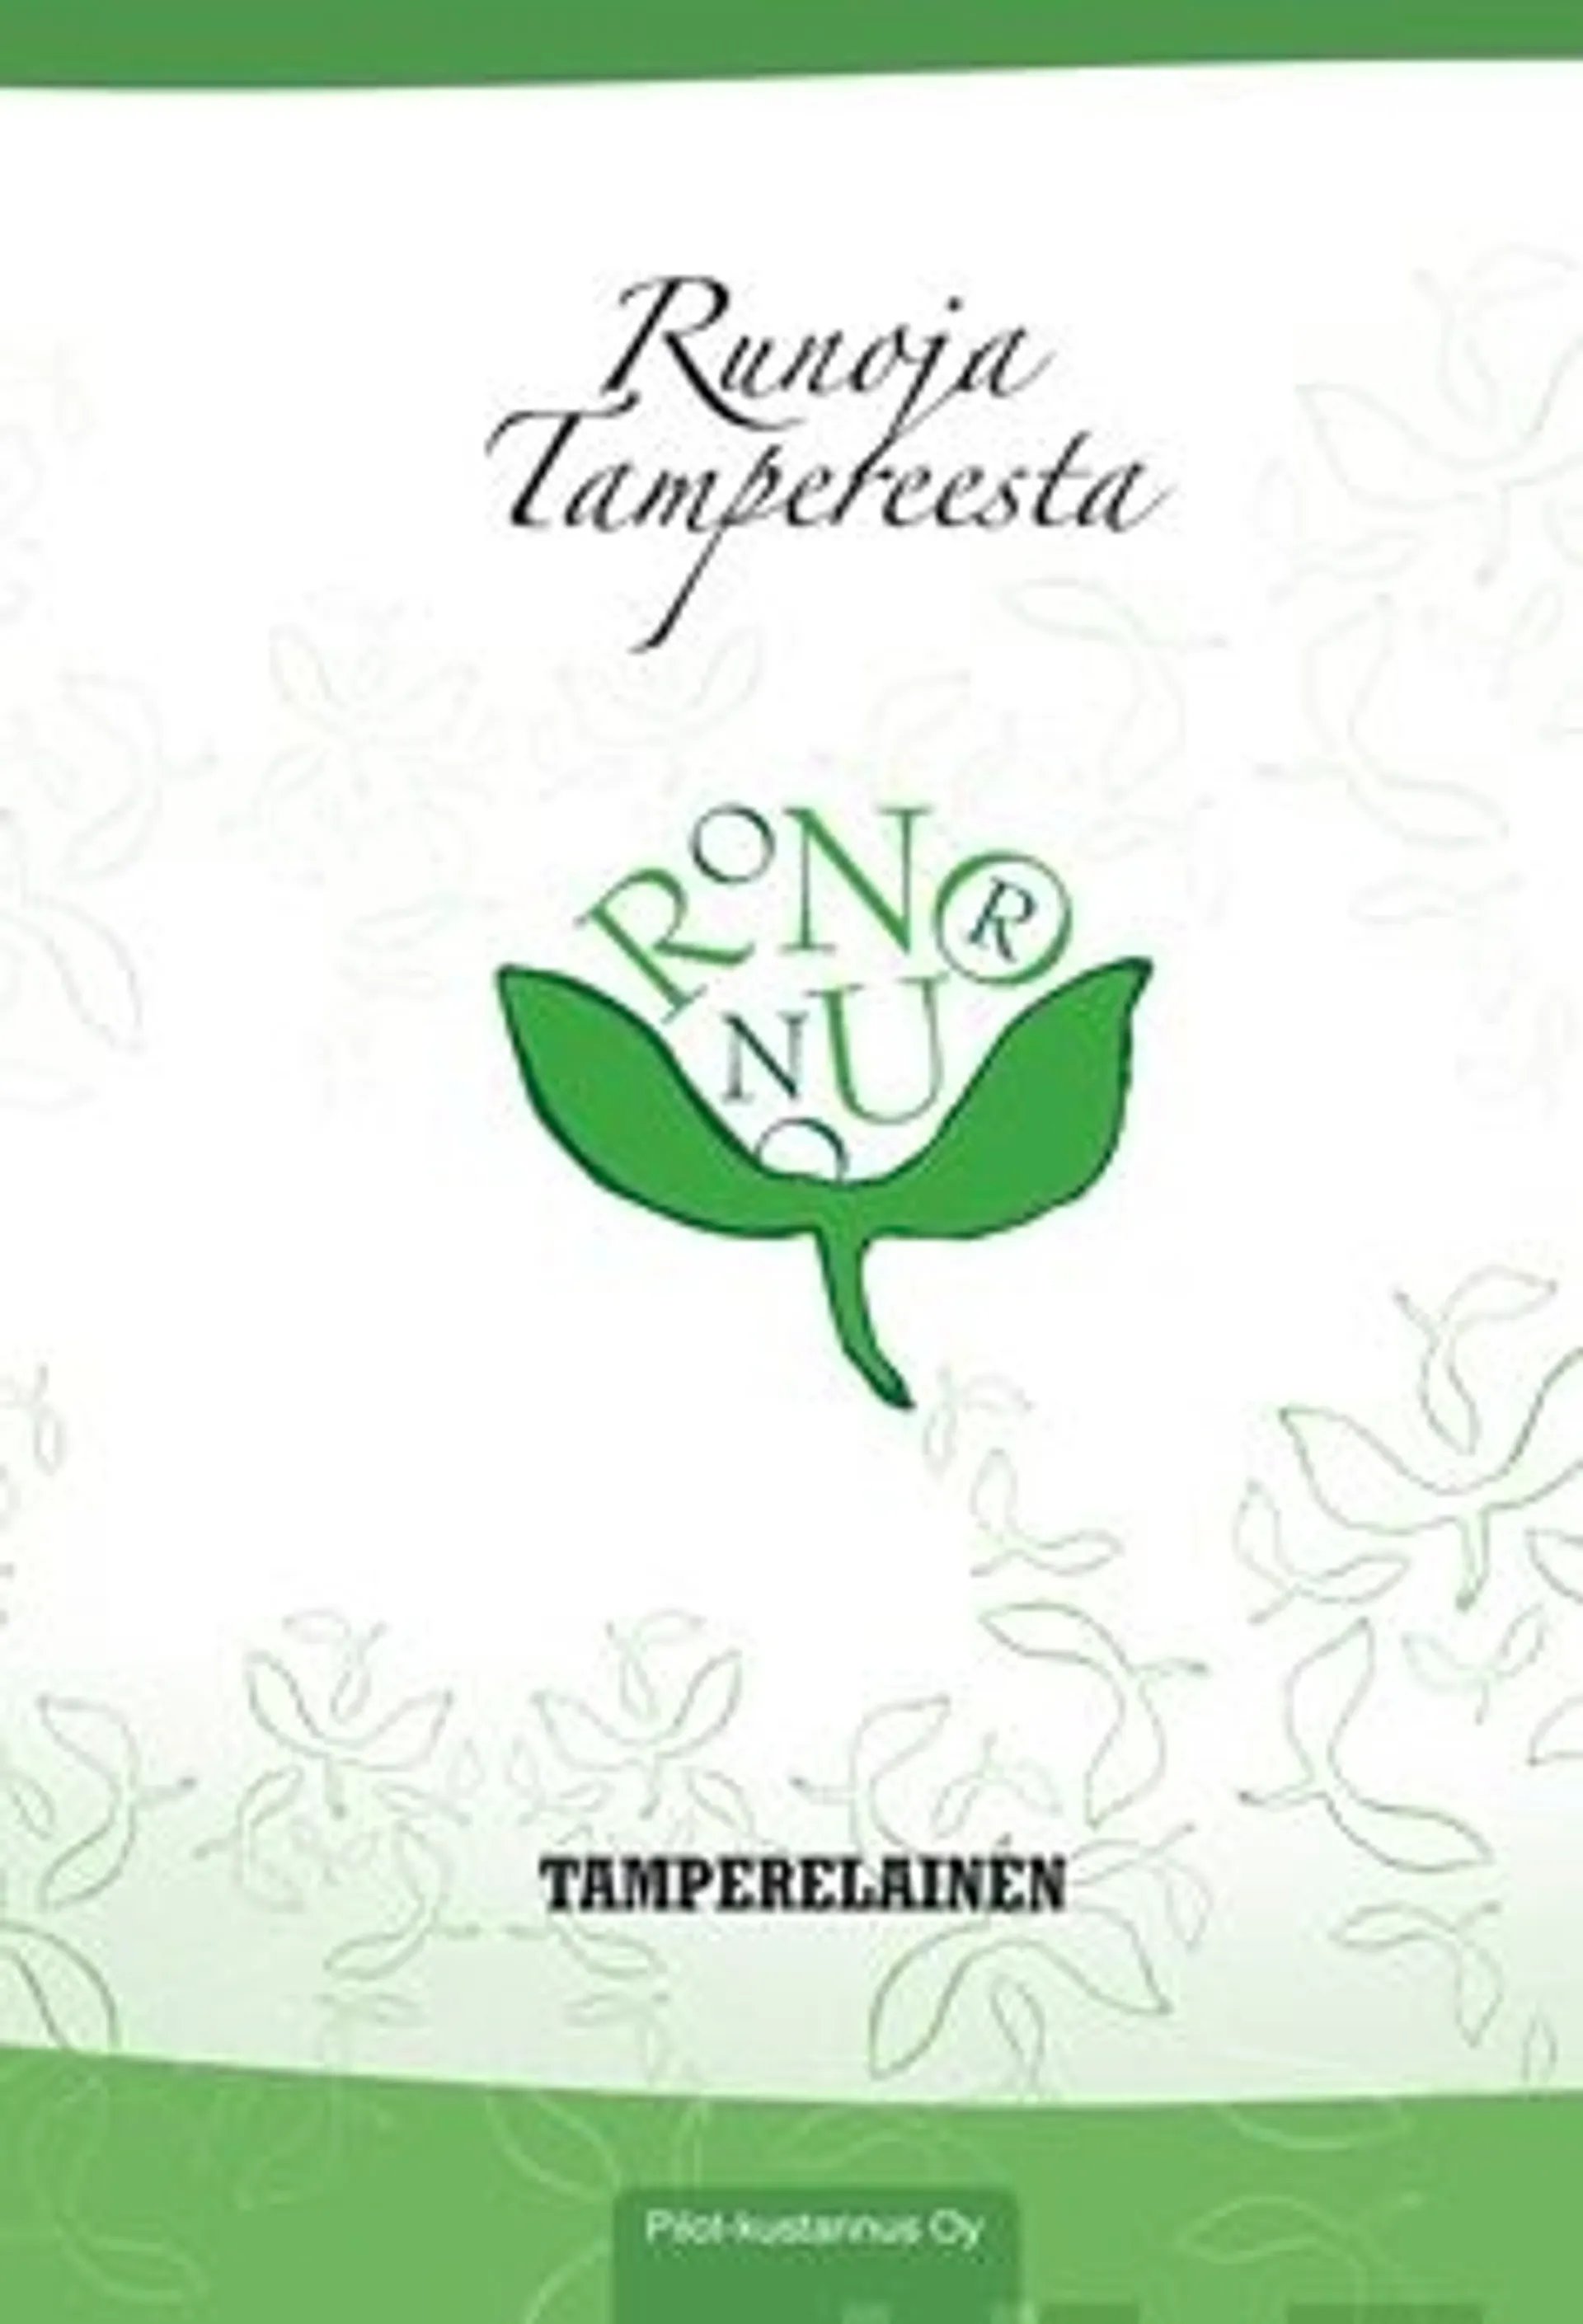 Runoja Tampereesta